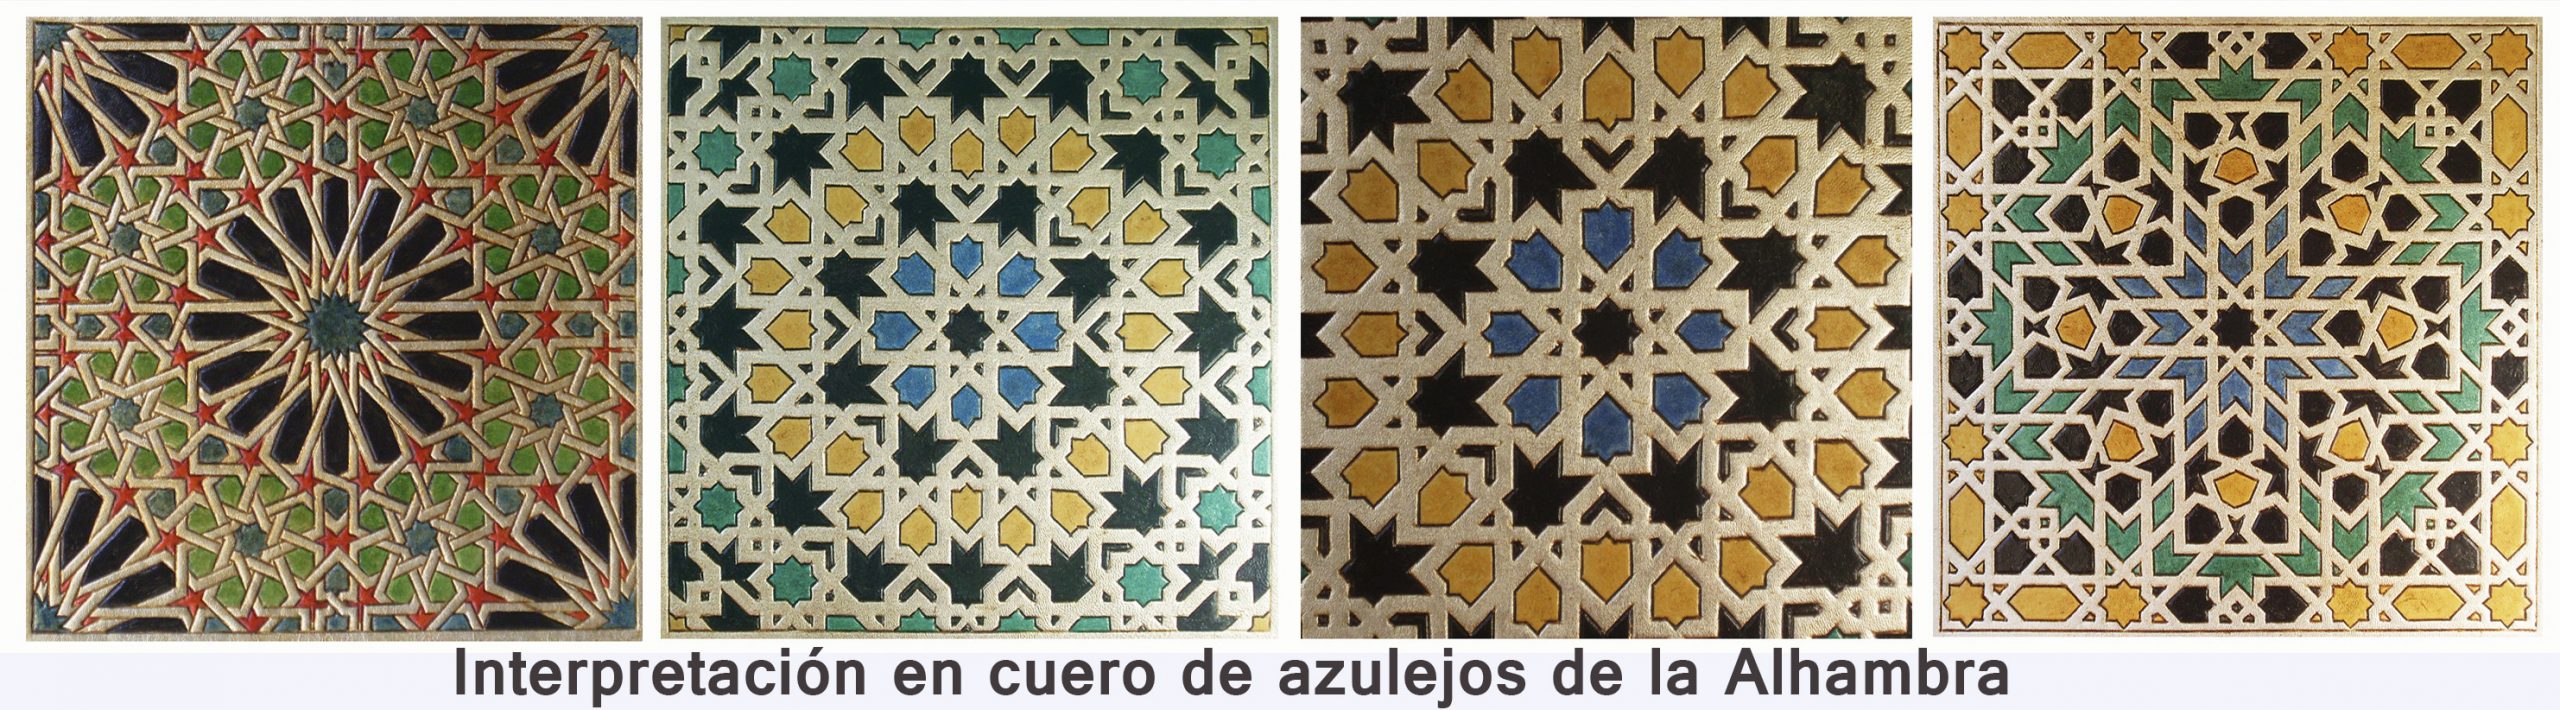 3-Interpretación en cuero de azulejos de la Alhambra